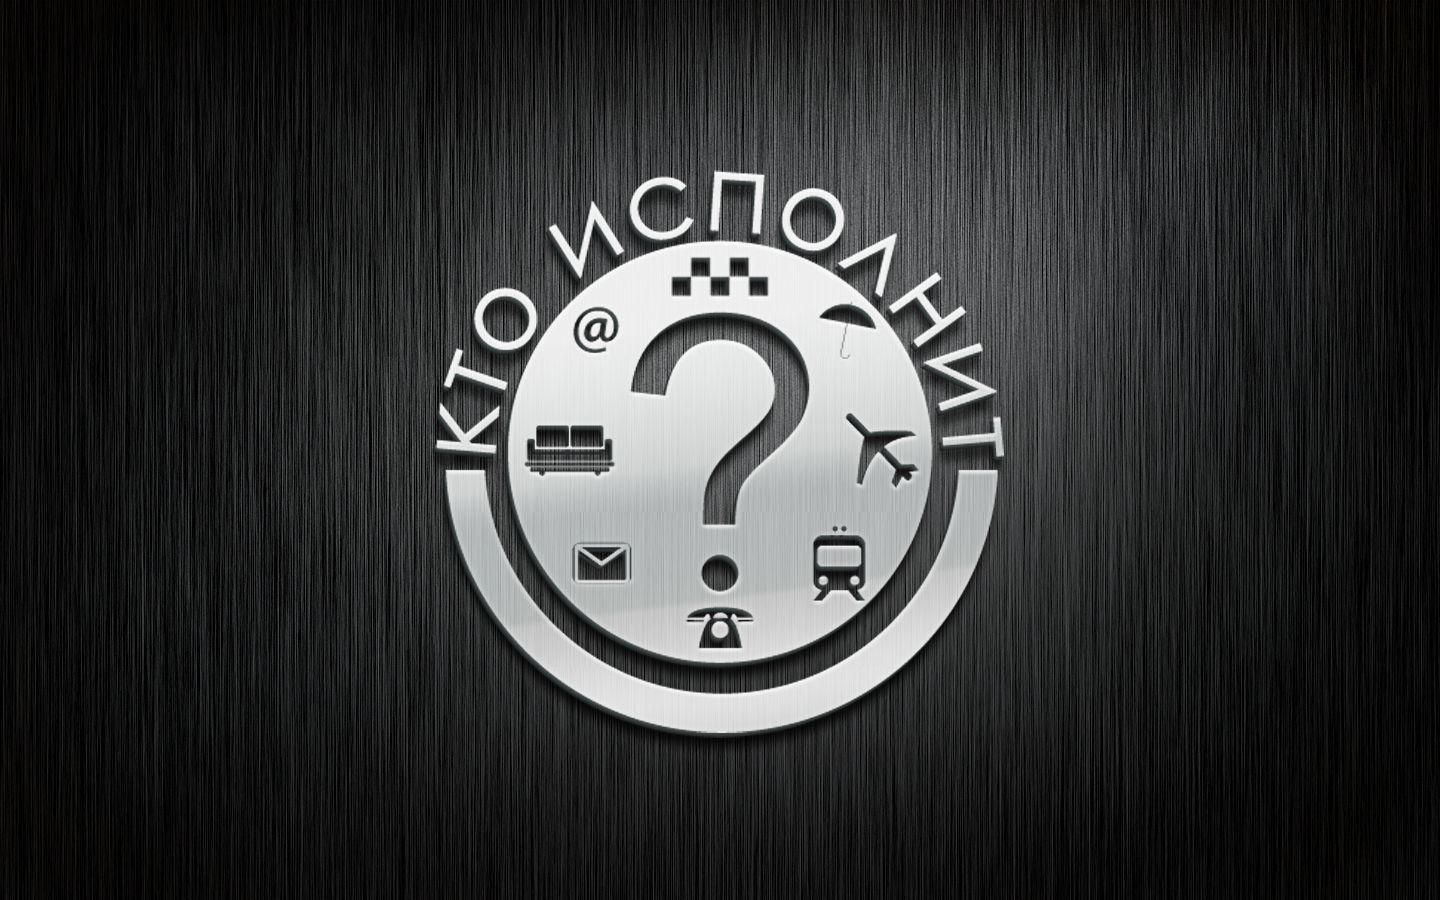 Логотип для службы заказов 